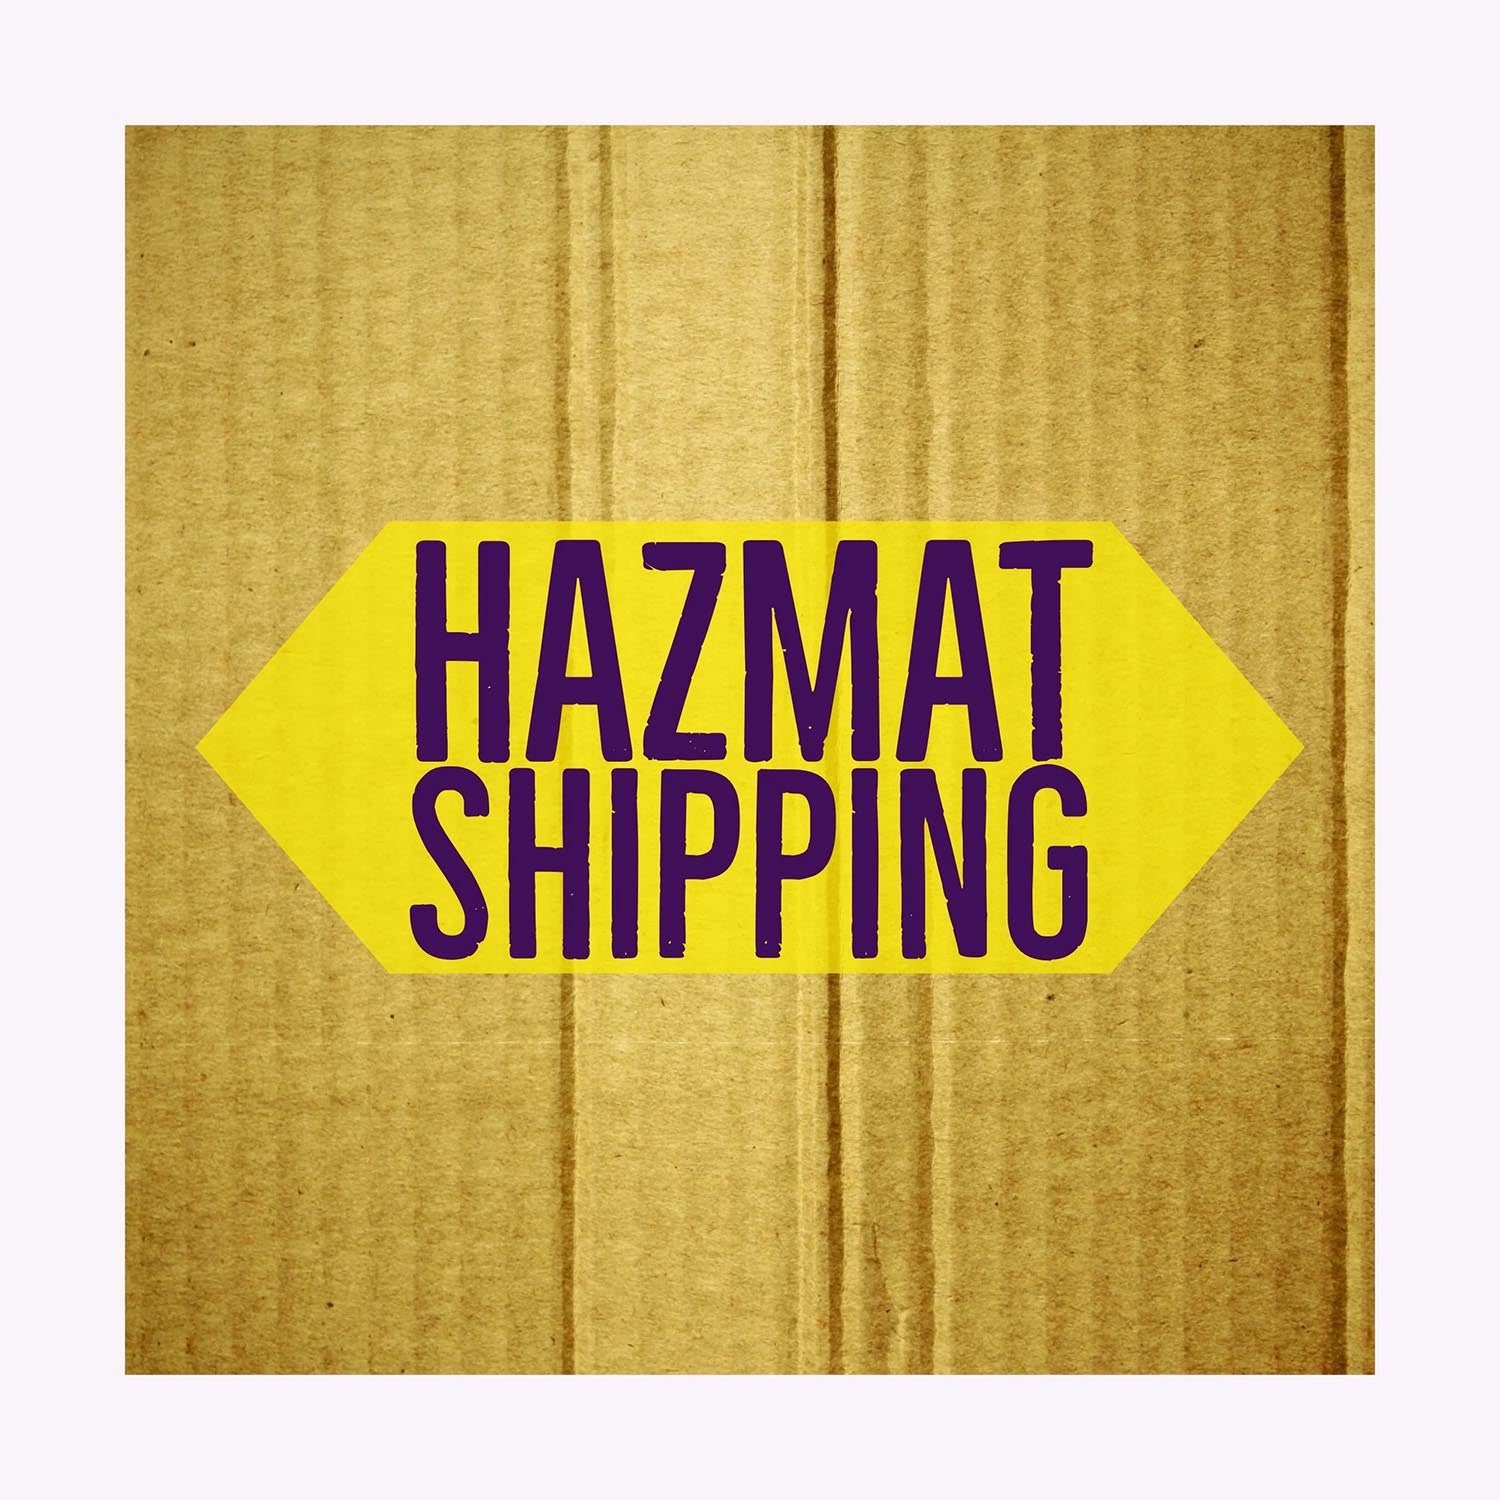 Hazardous Material Shipping Fee (11 - 15 gallons)